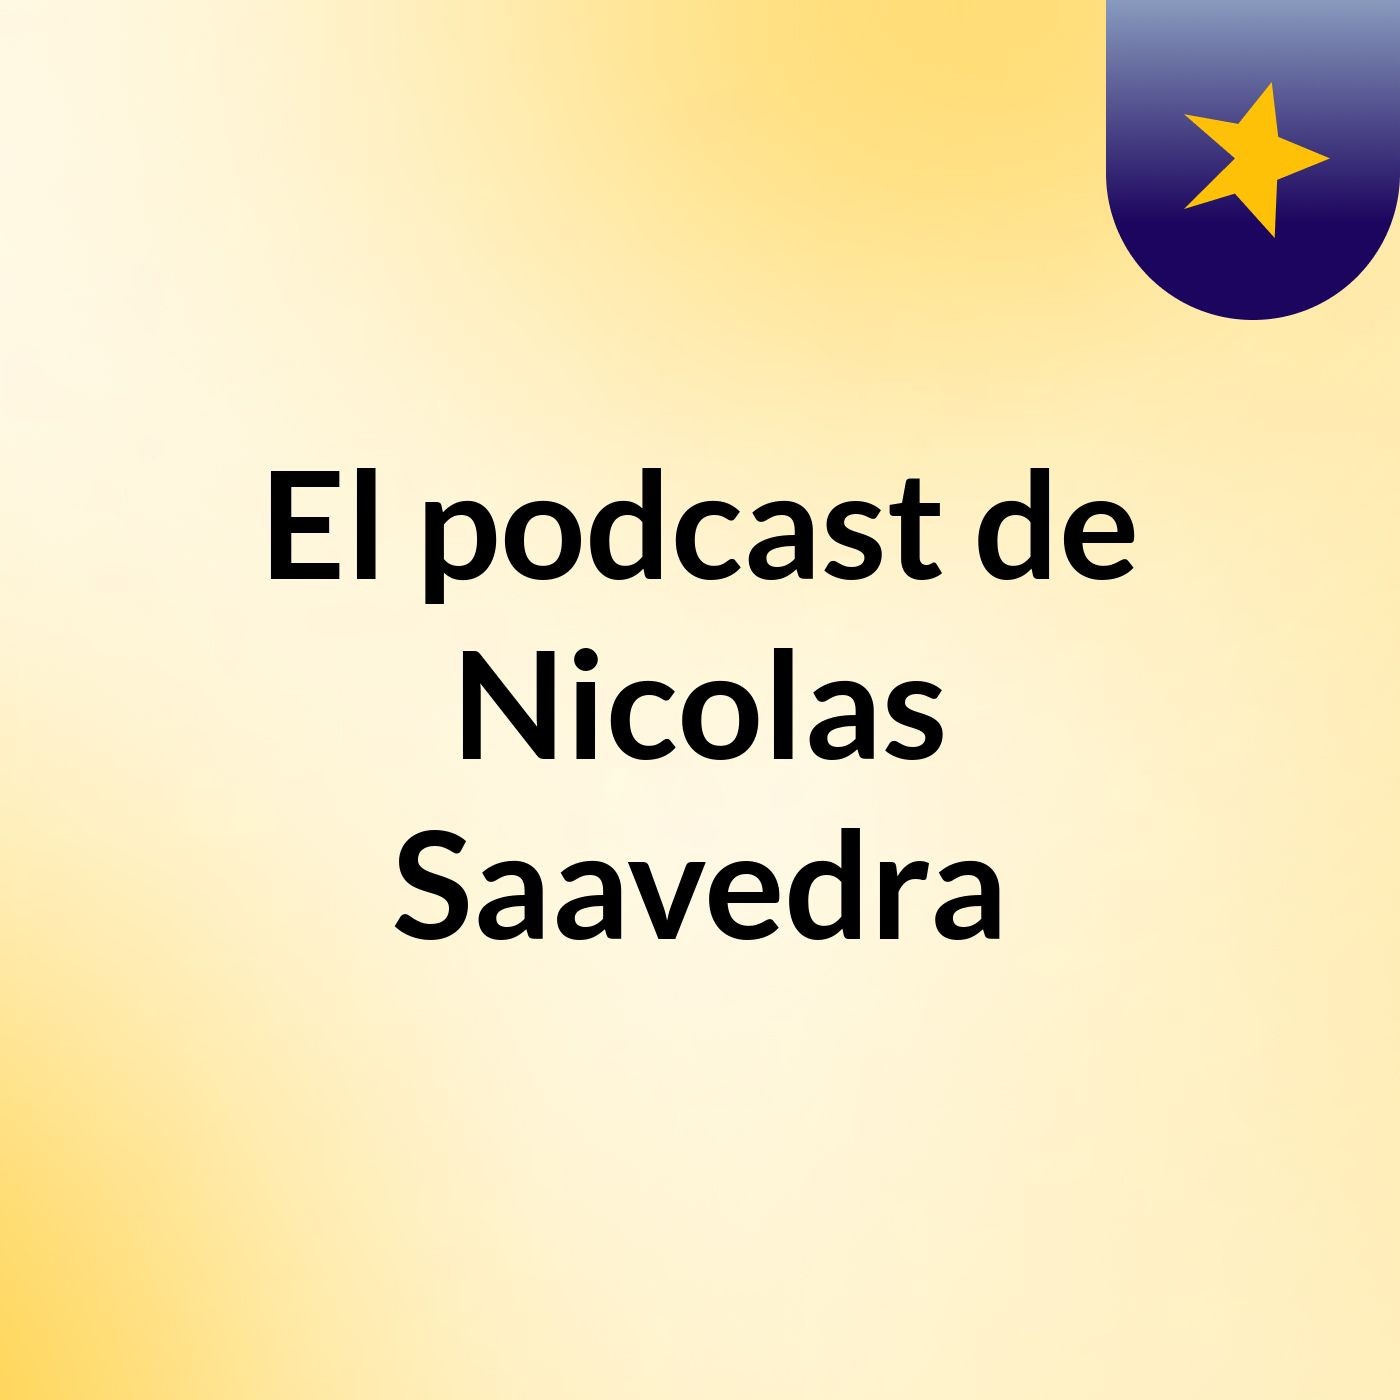 Episodio 3 - El podcast de Nicolas Saavedra